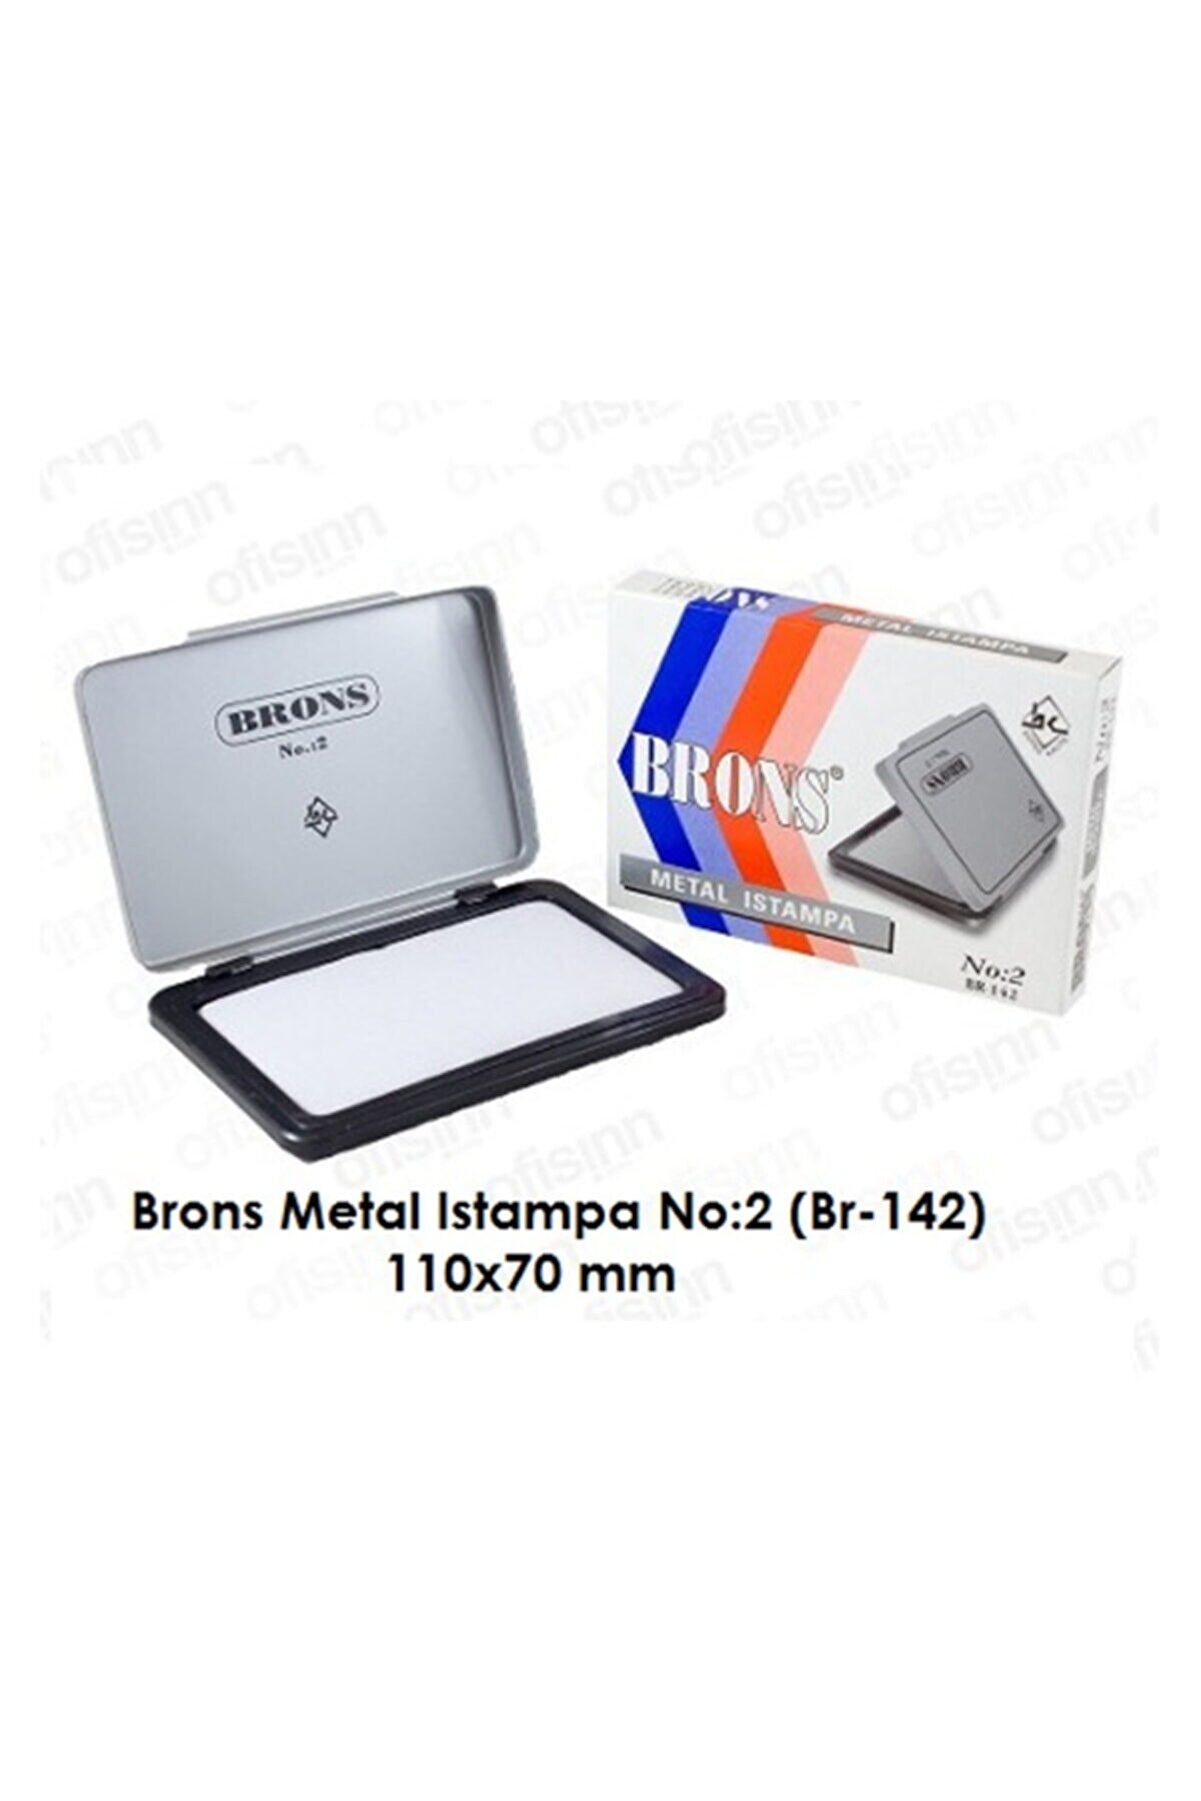 Brons Istampa Metal No:2 11x7 Br-142 (1 ADET)